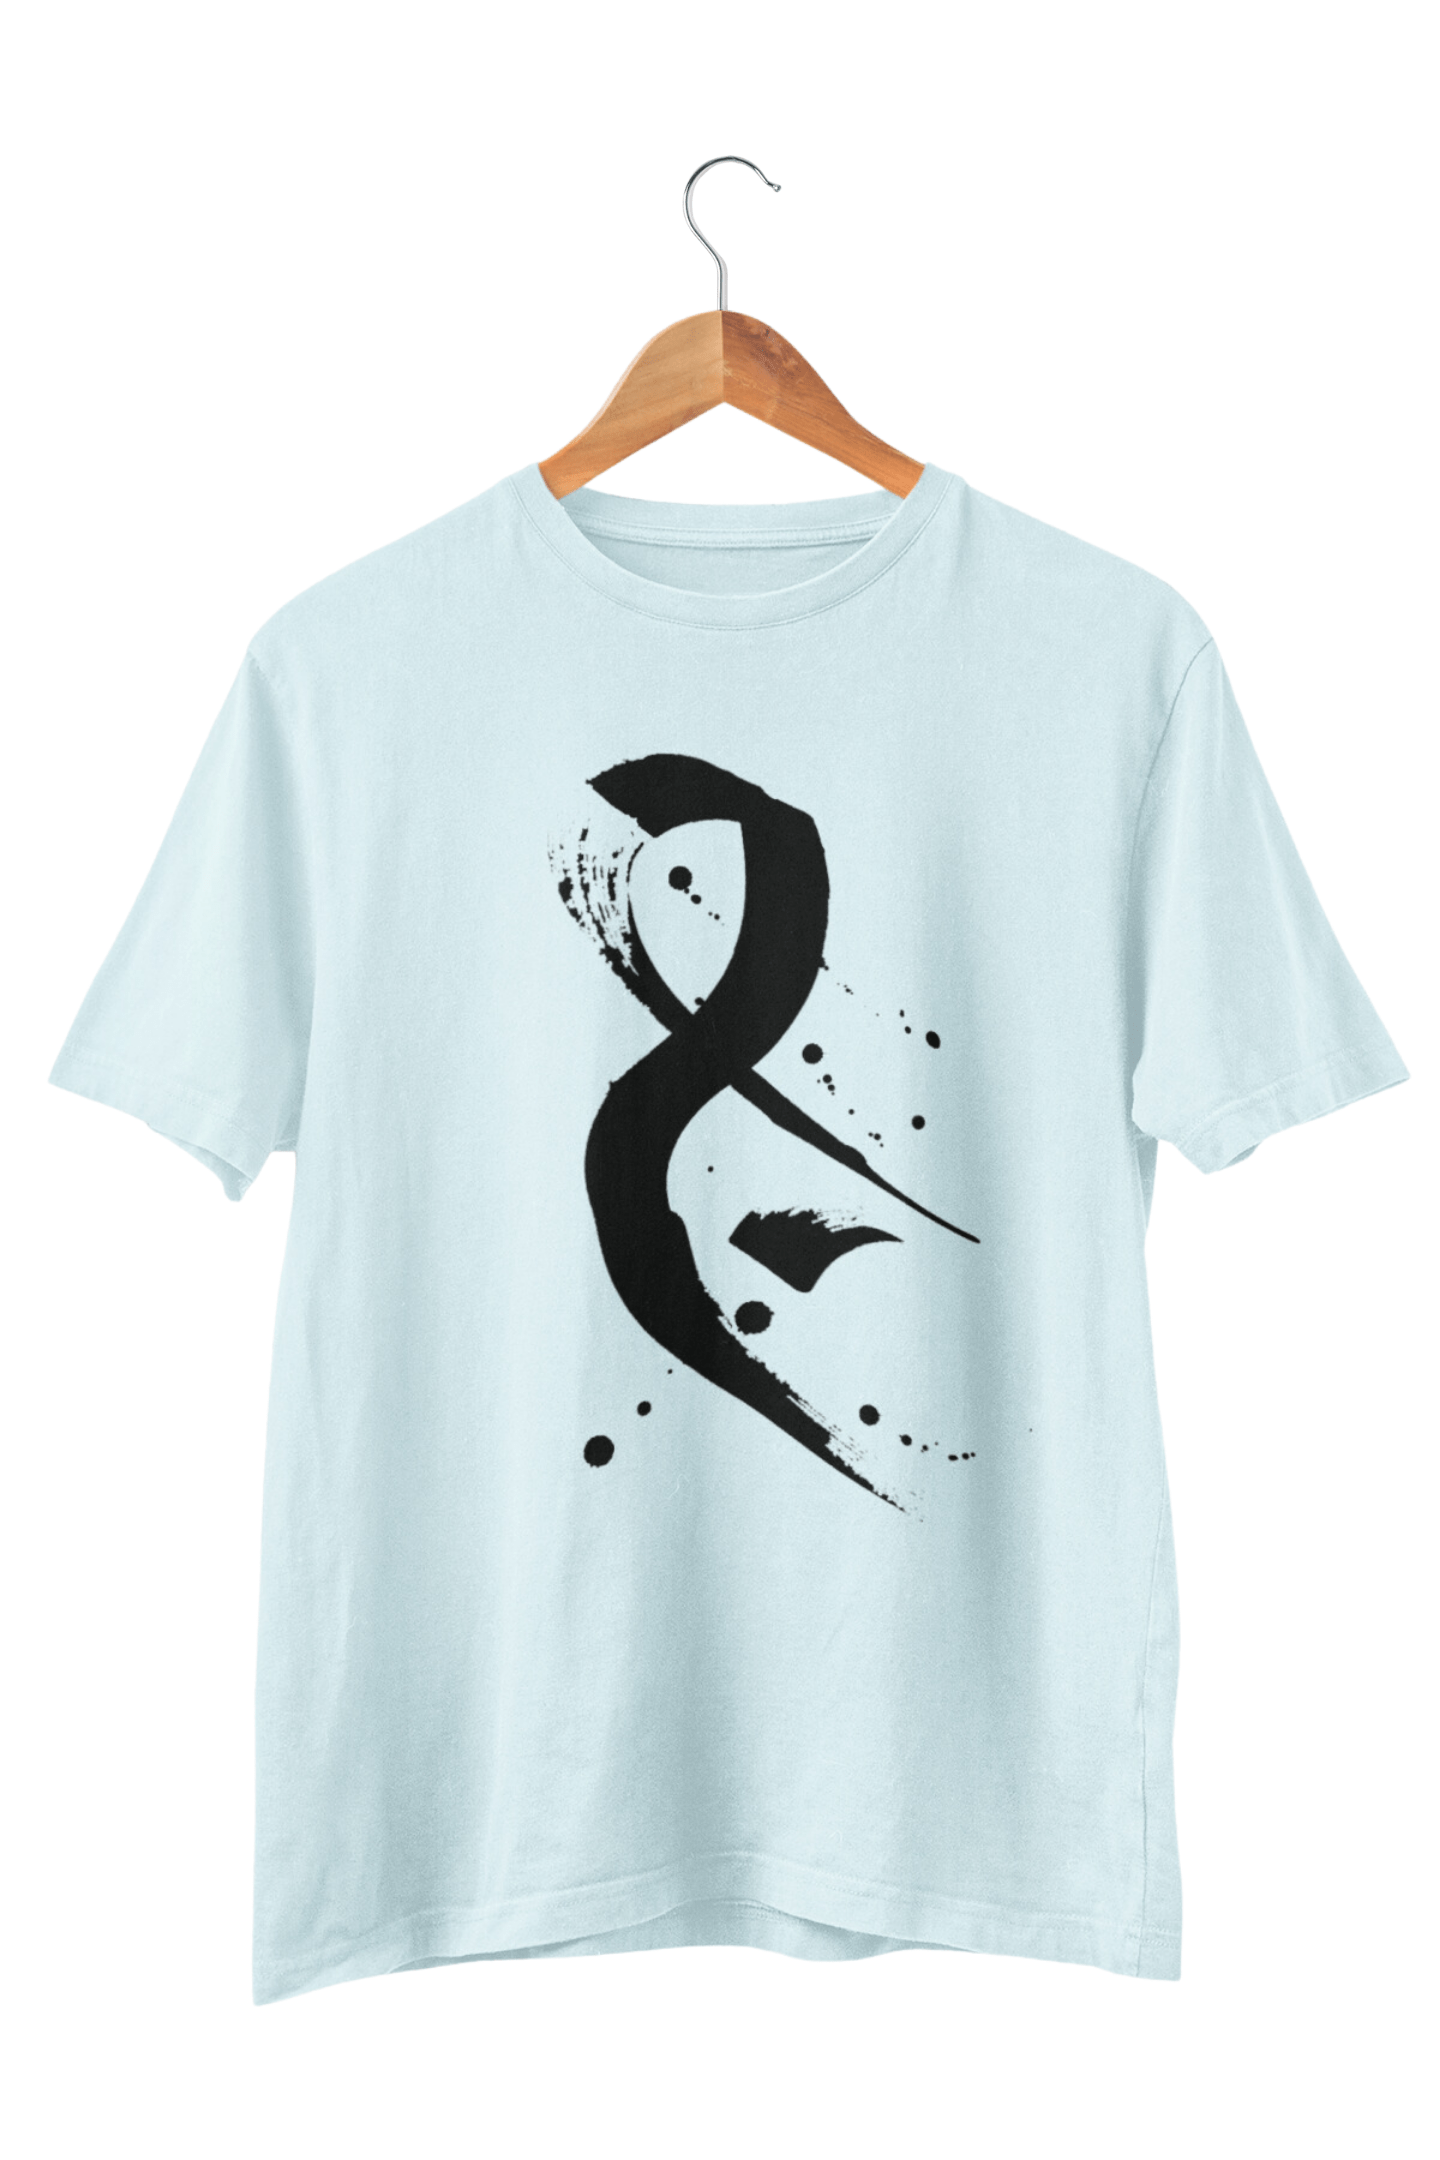 Jim Calligraphy T-shirt - Veesheh